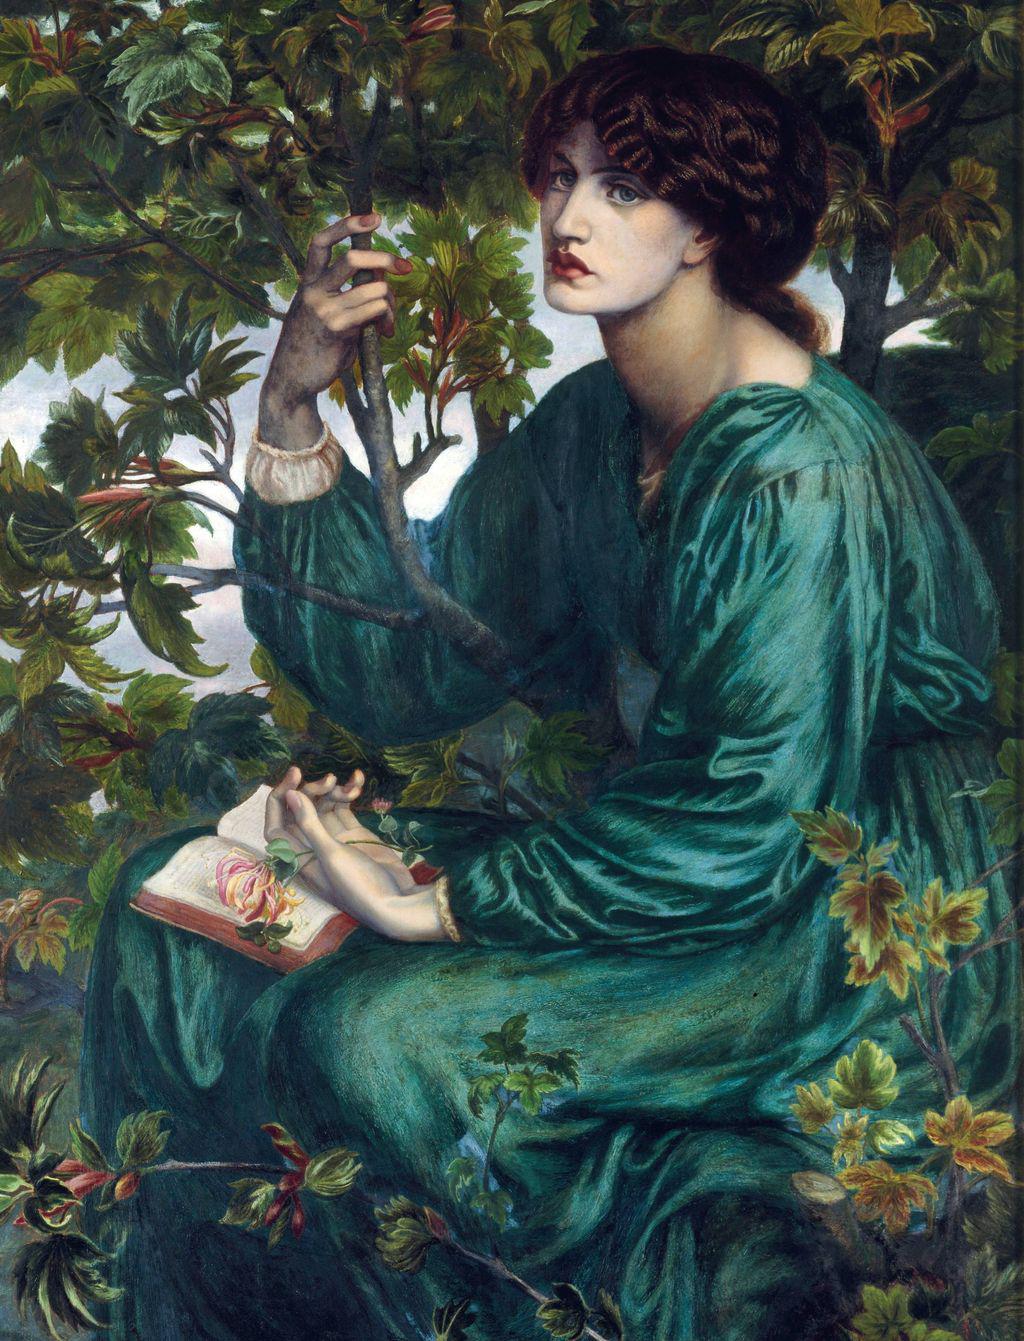 Jane Burden by Dante Gabriel Rossetti